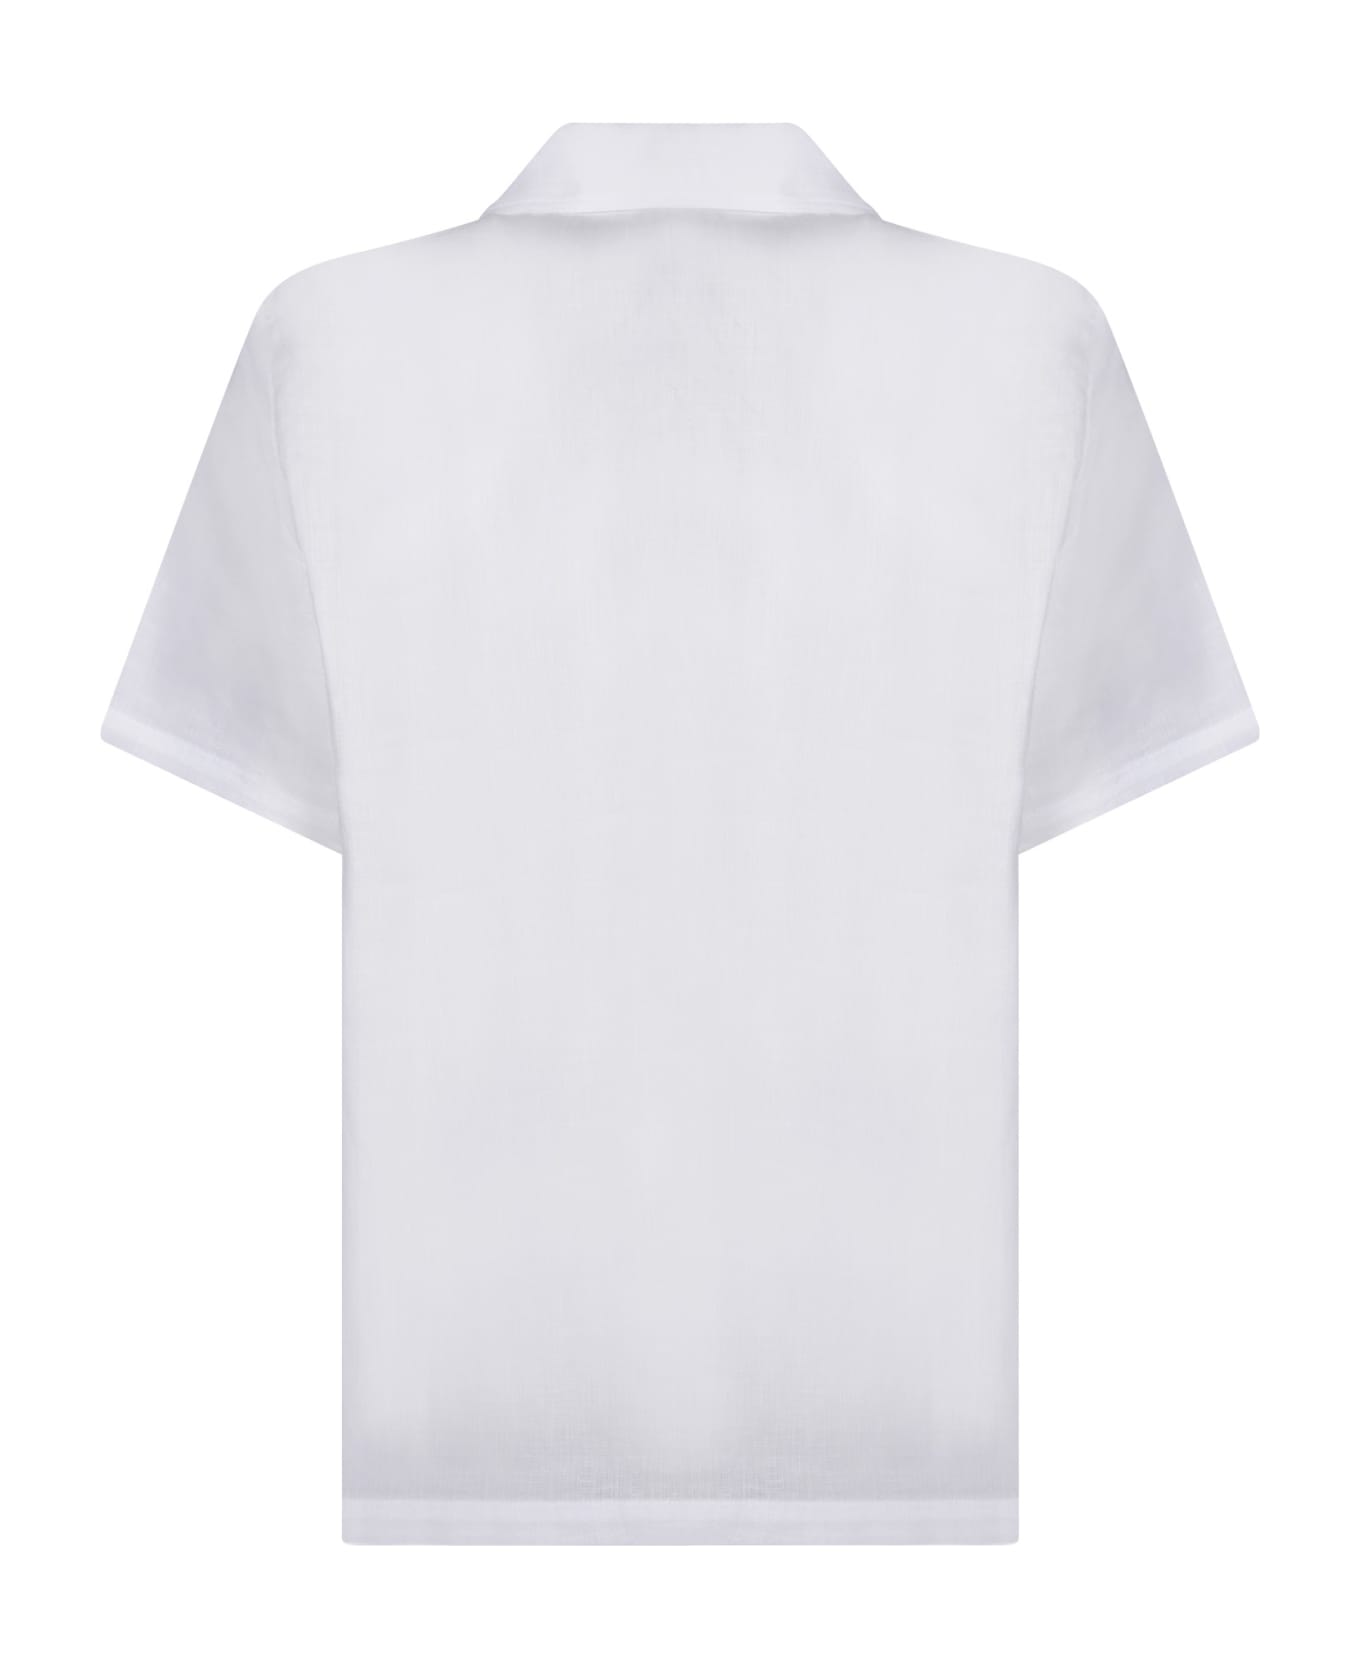 Séfr Dalian' White Shirt - White